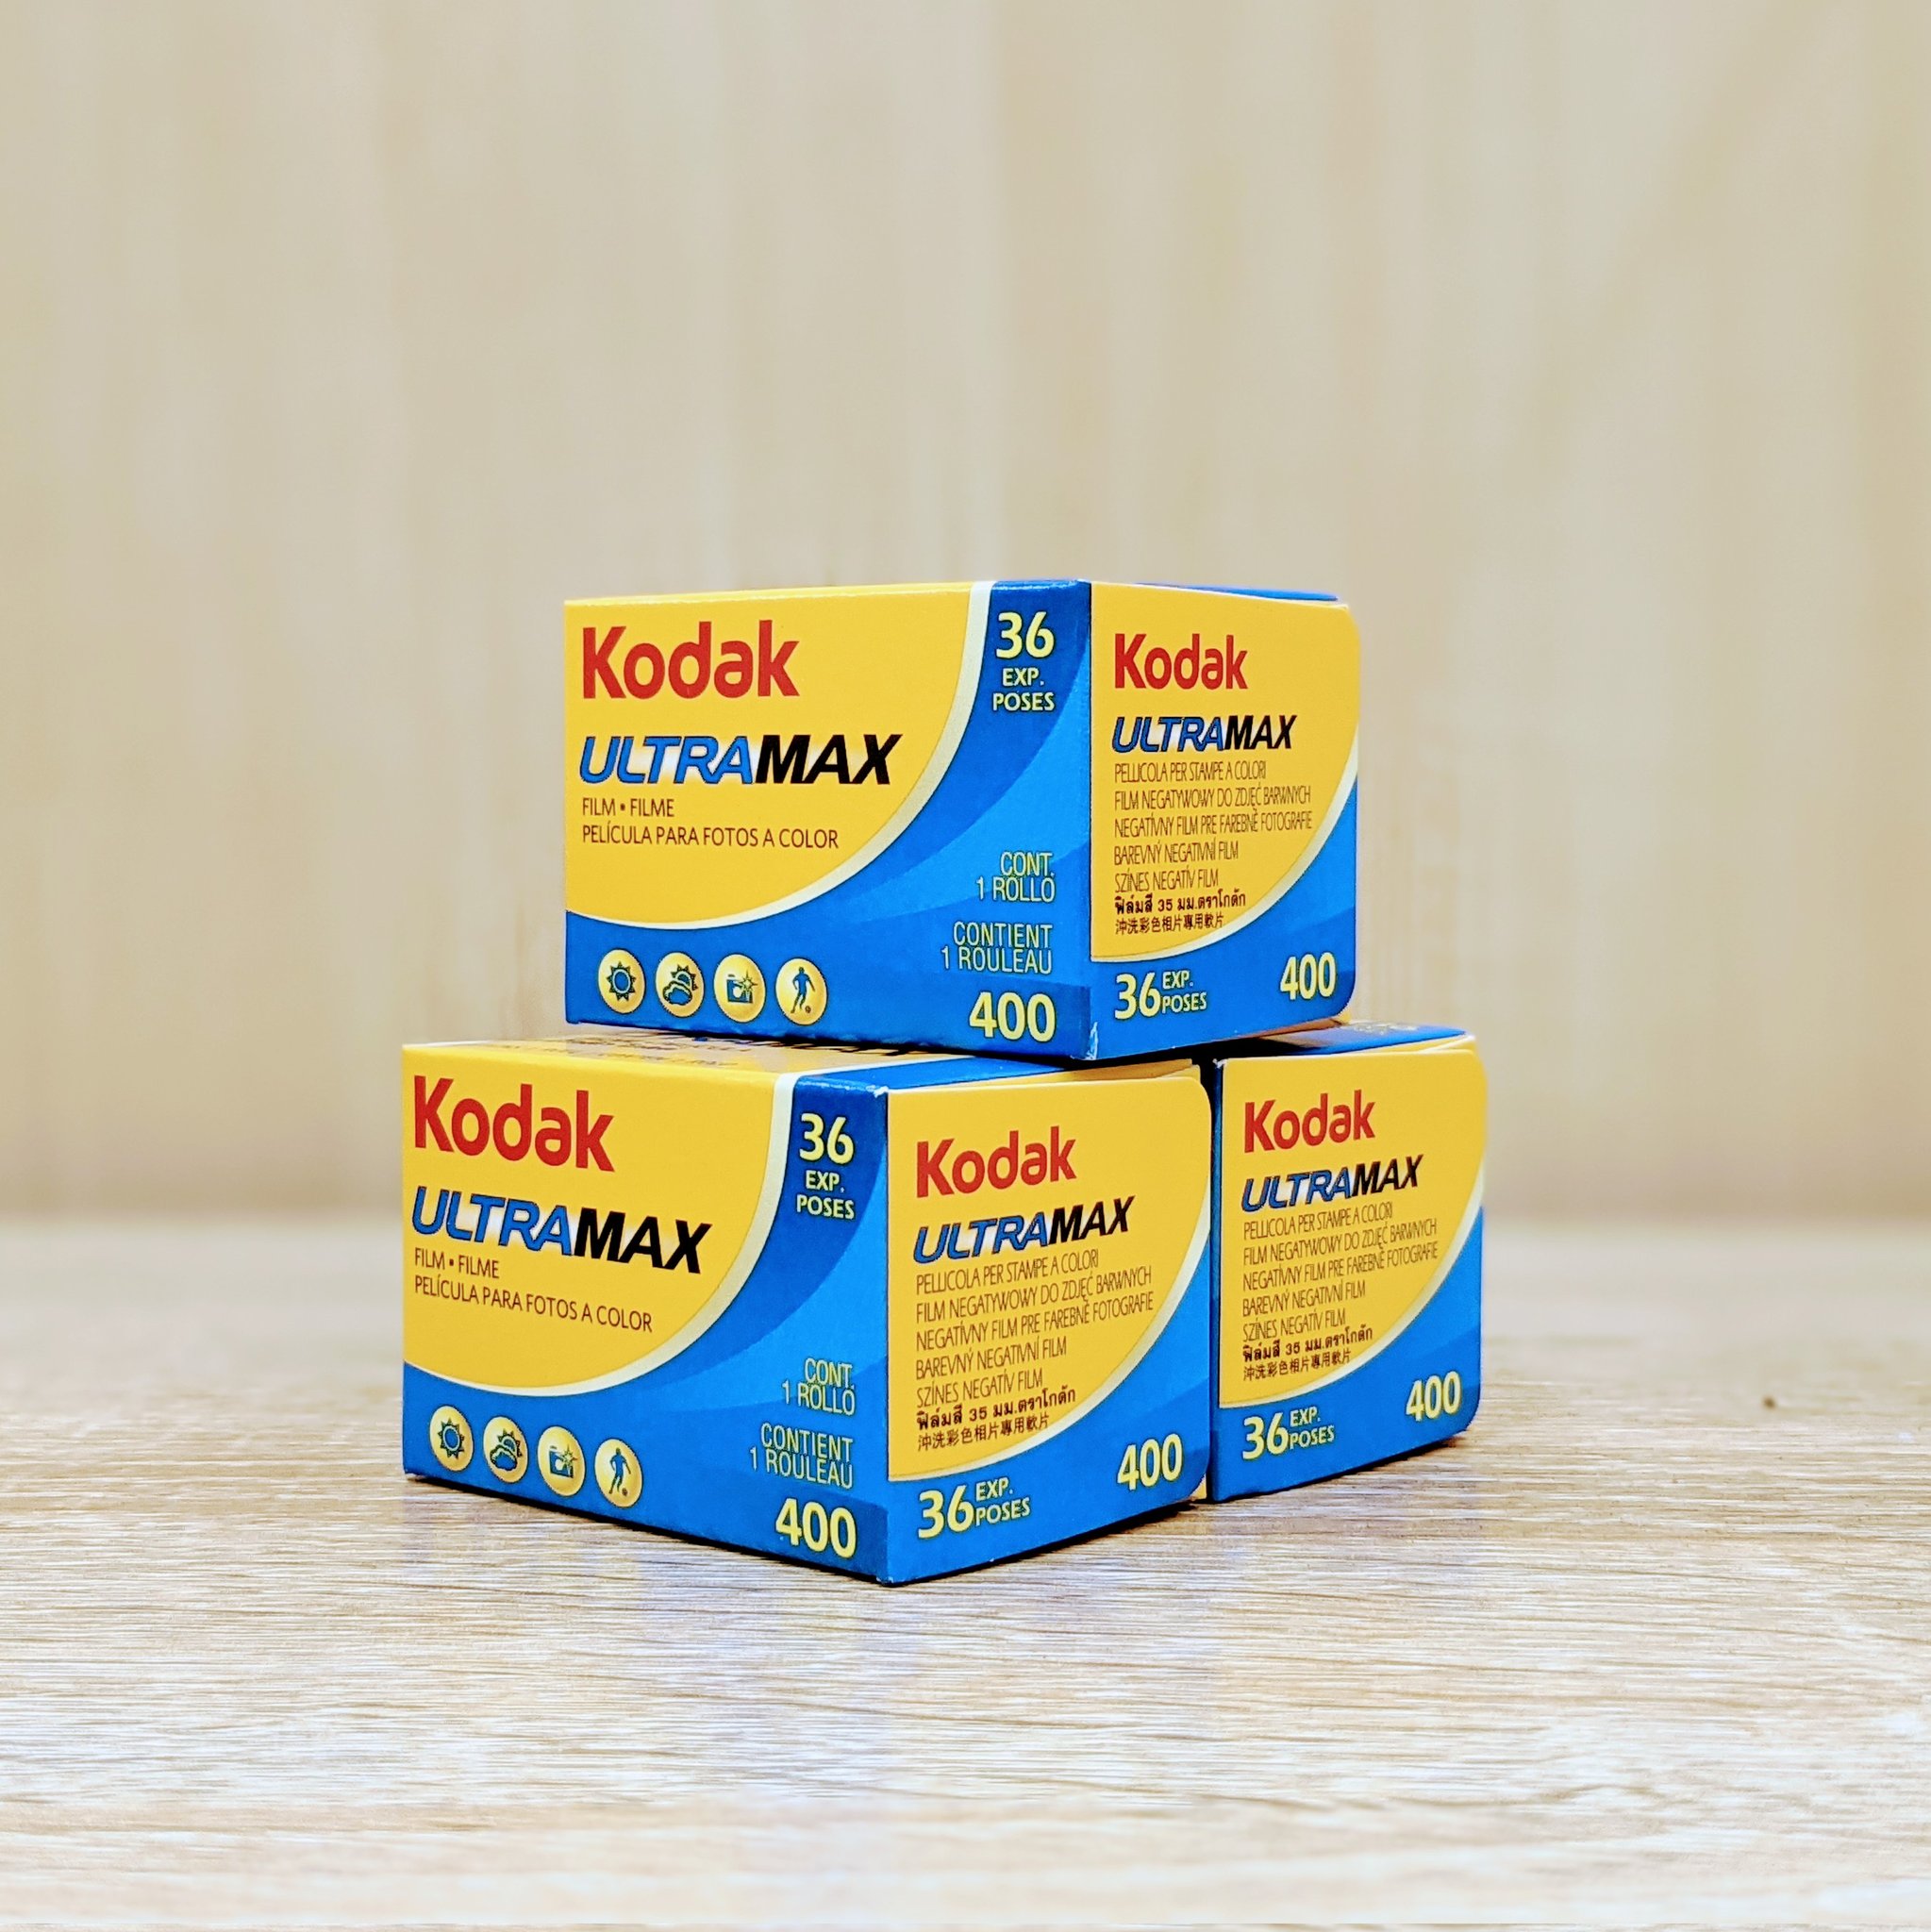 カメラのキタムラ東京 渋谷店 入荷情報 大人気フィムルが入荷してます Kodak Ultramax 400 とても扱いやすく初心者の方にも大人気のフィルムです 入荷が安定しないのが玉に瑕ですが 現在渋谷店にたくさん入荷しました 撮影後はスマホ転送も試して